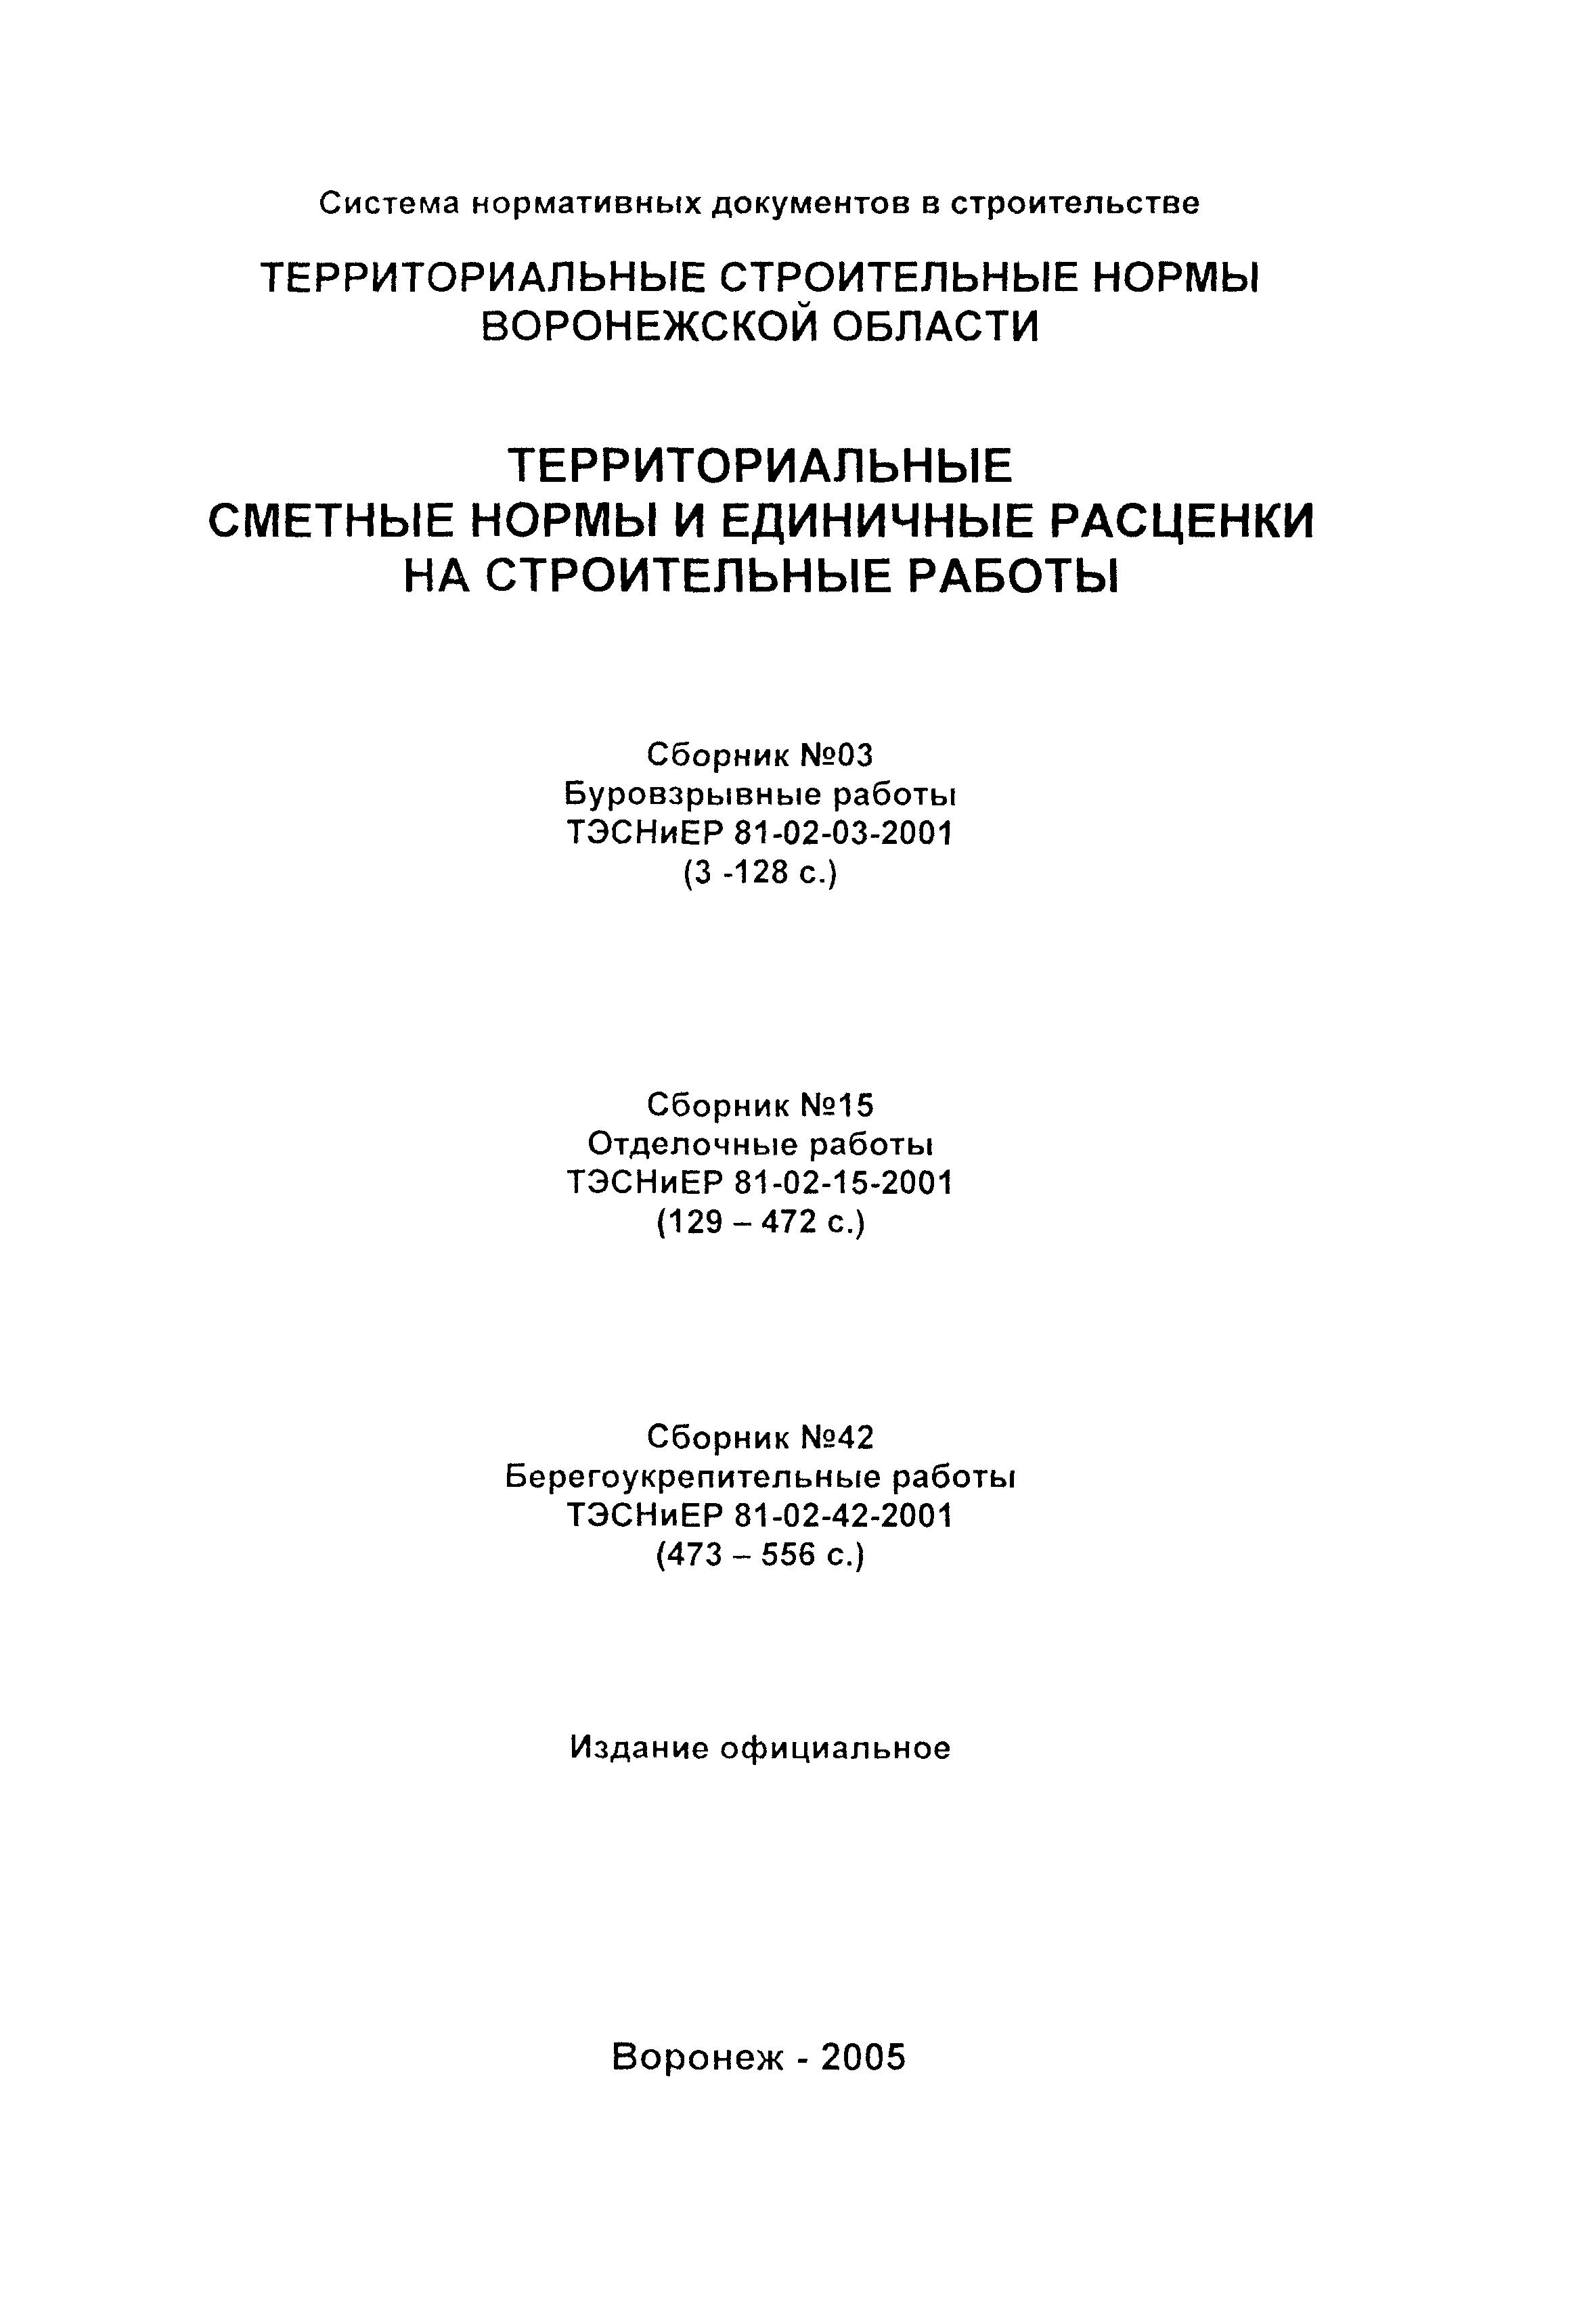 ТЭСНиЕР Воронежской области 81-02-42-2001